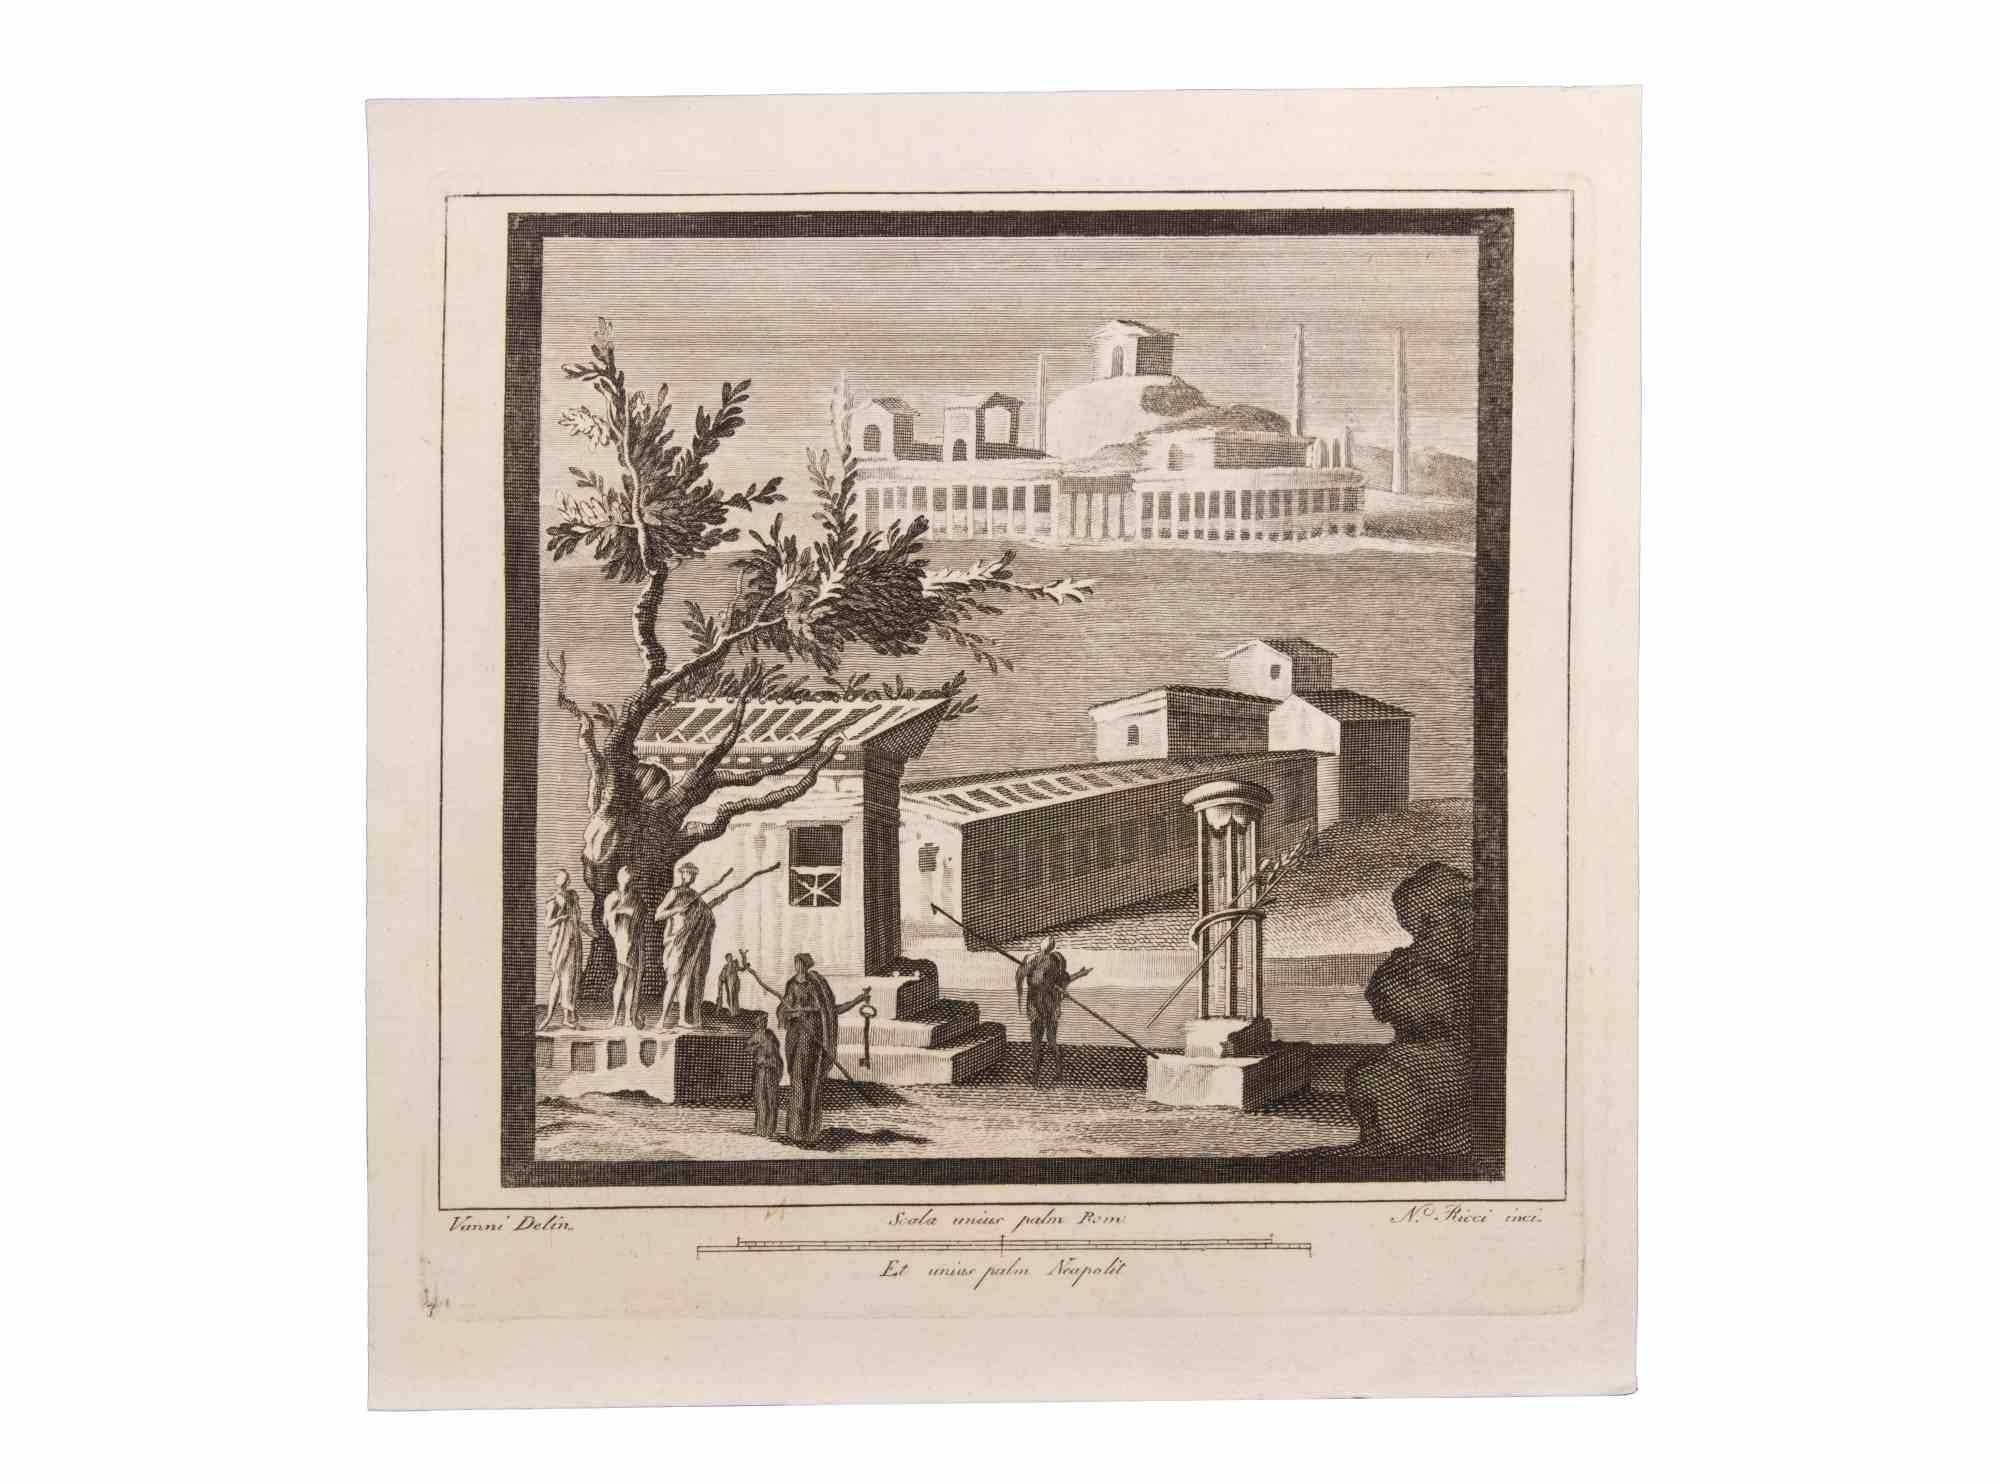 Seascape With Monuments and Figures est une gravure réalisée par  Niccolò Vanni (1750-1770).

La gravure appartient à la suite d'estampes "Antiquités d'Herculanum exposées" (titre original : "Le Antichità di Ercolano Esposte"), un volume de huit